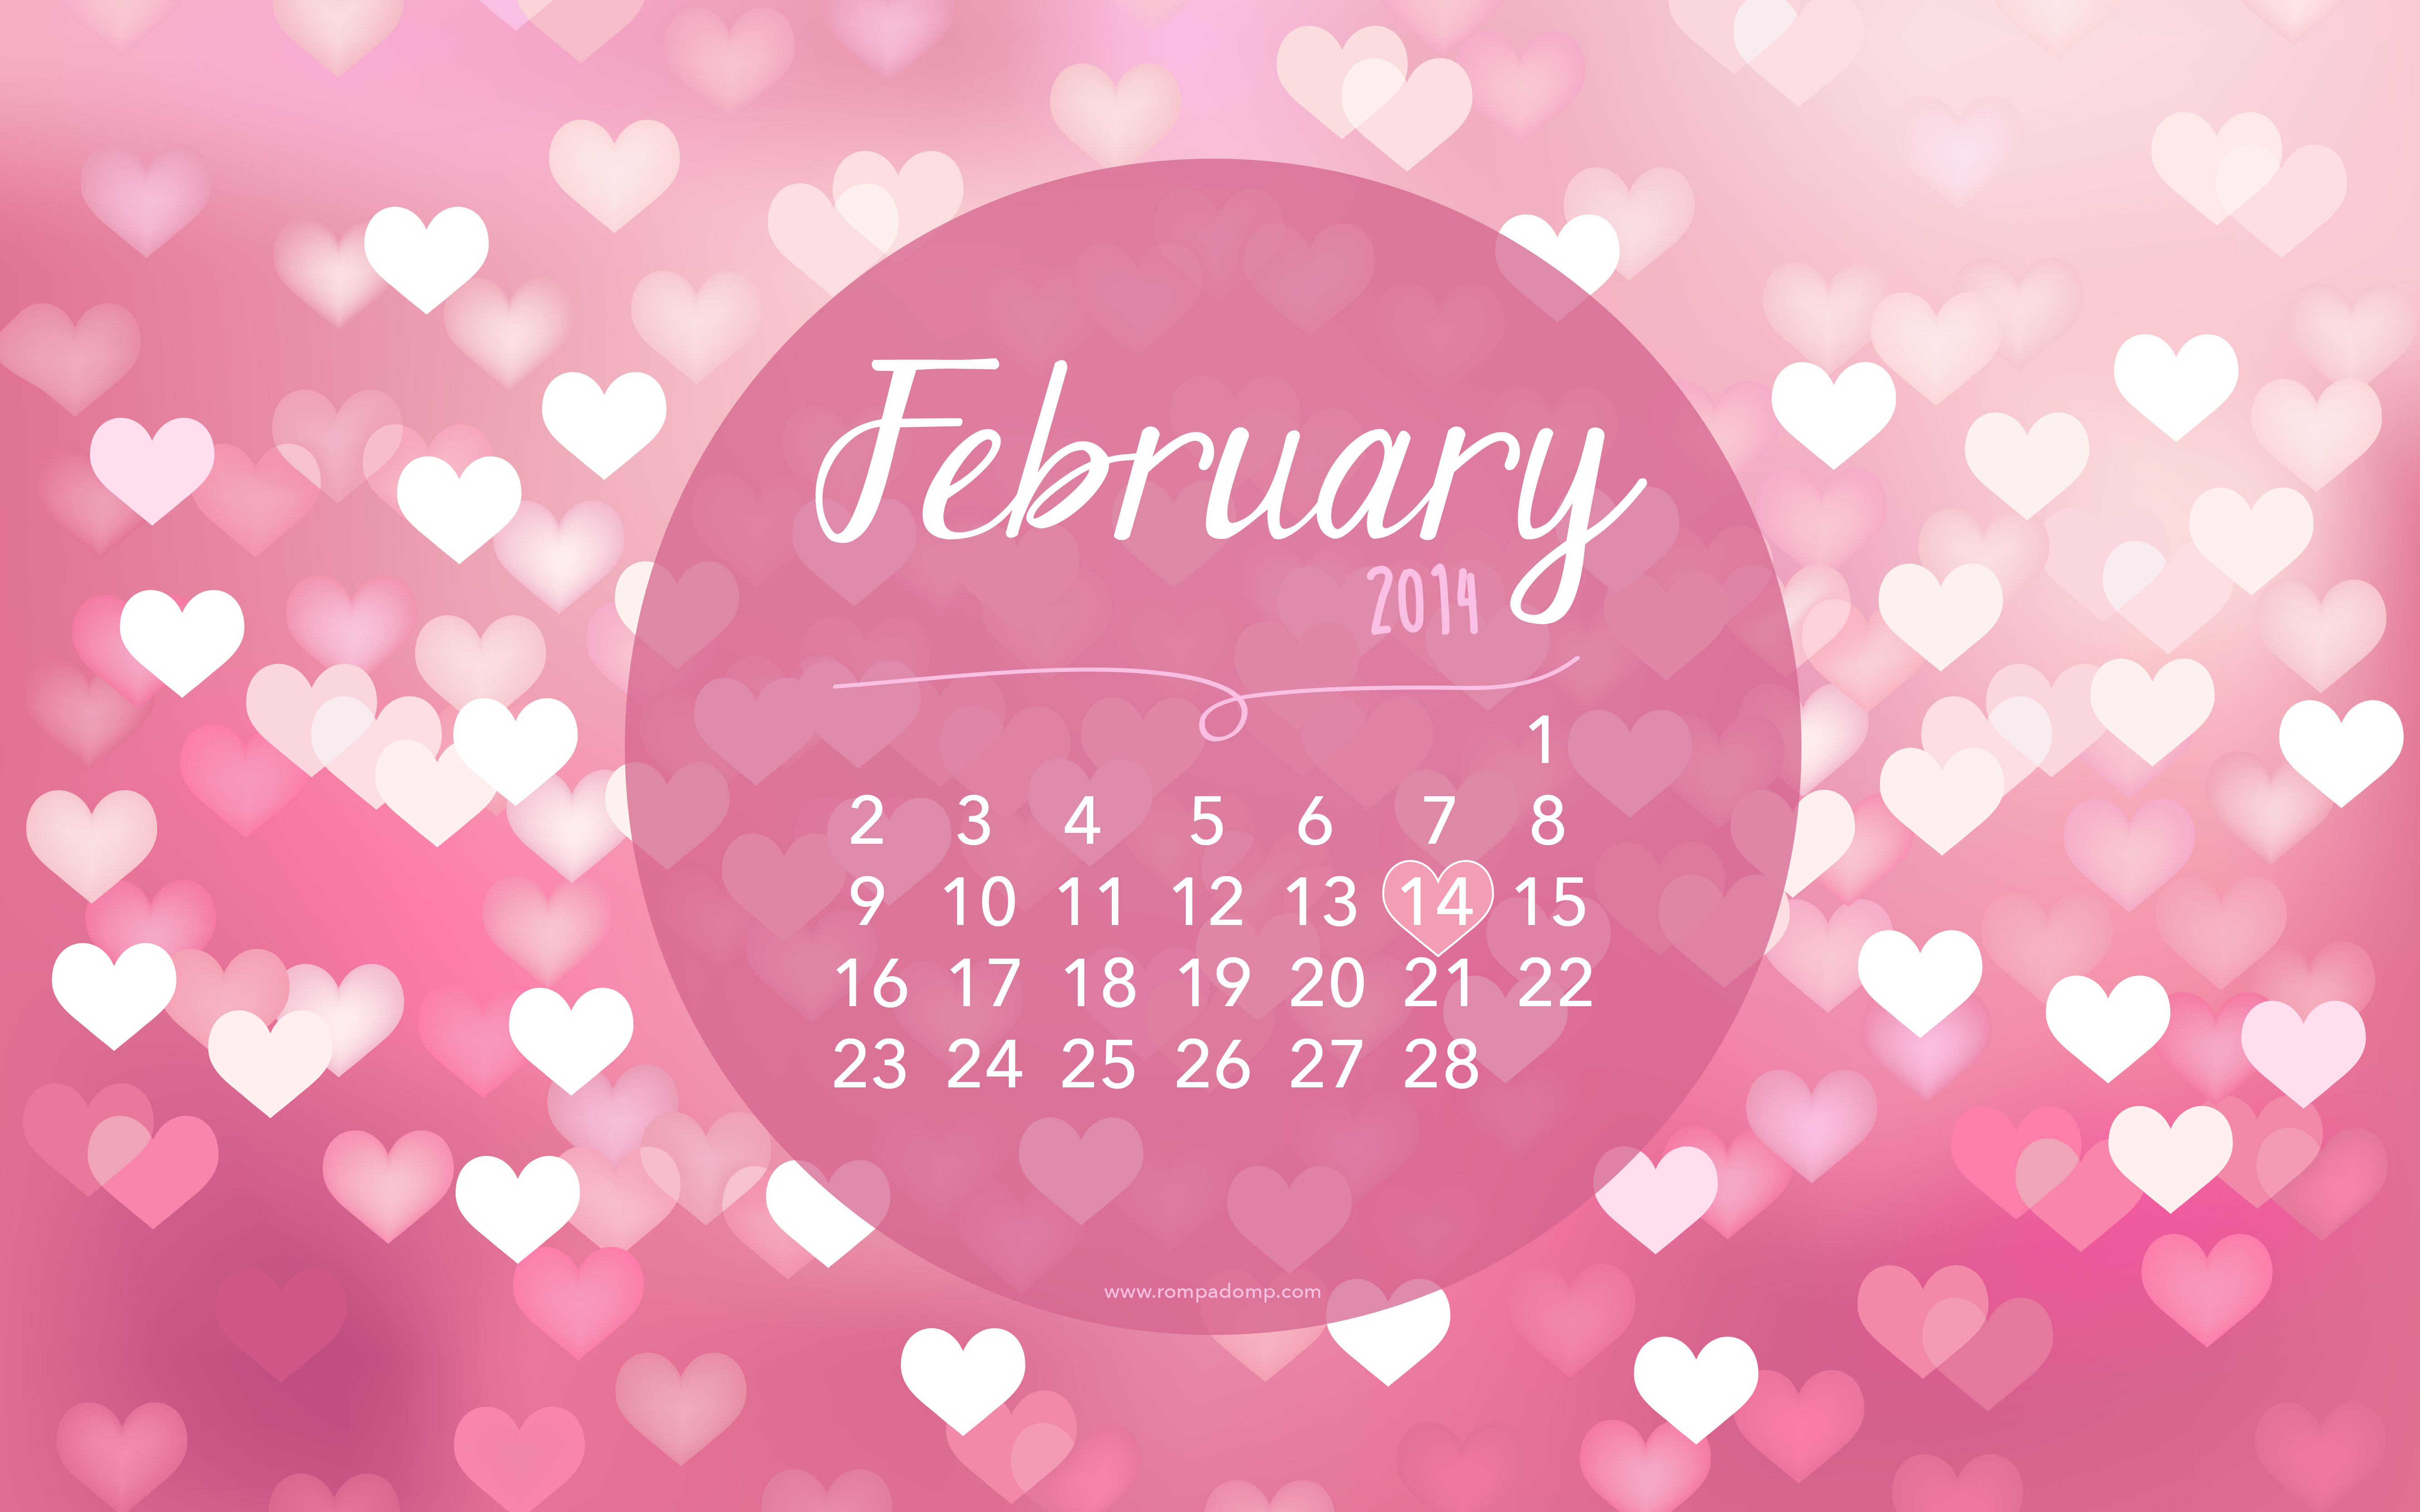 February 2019 Free Desktop CalendarWallpaper from Marmalead